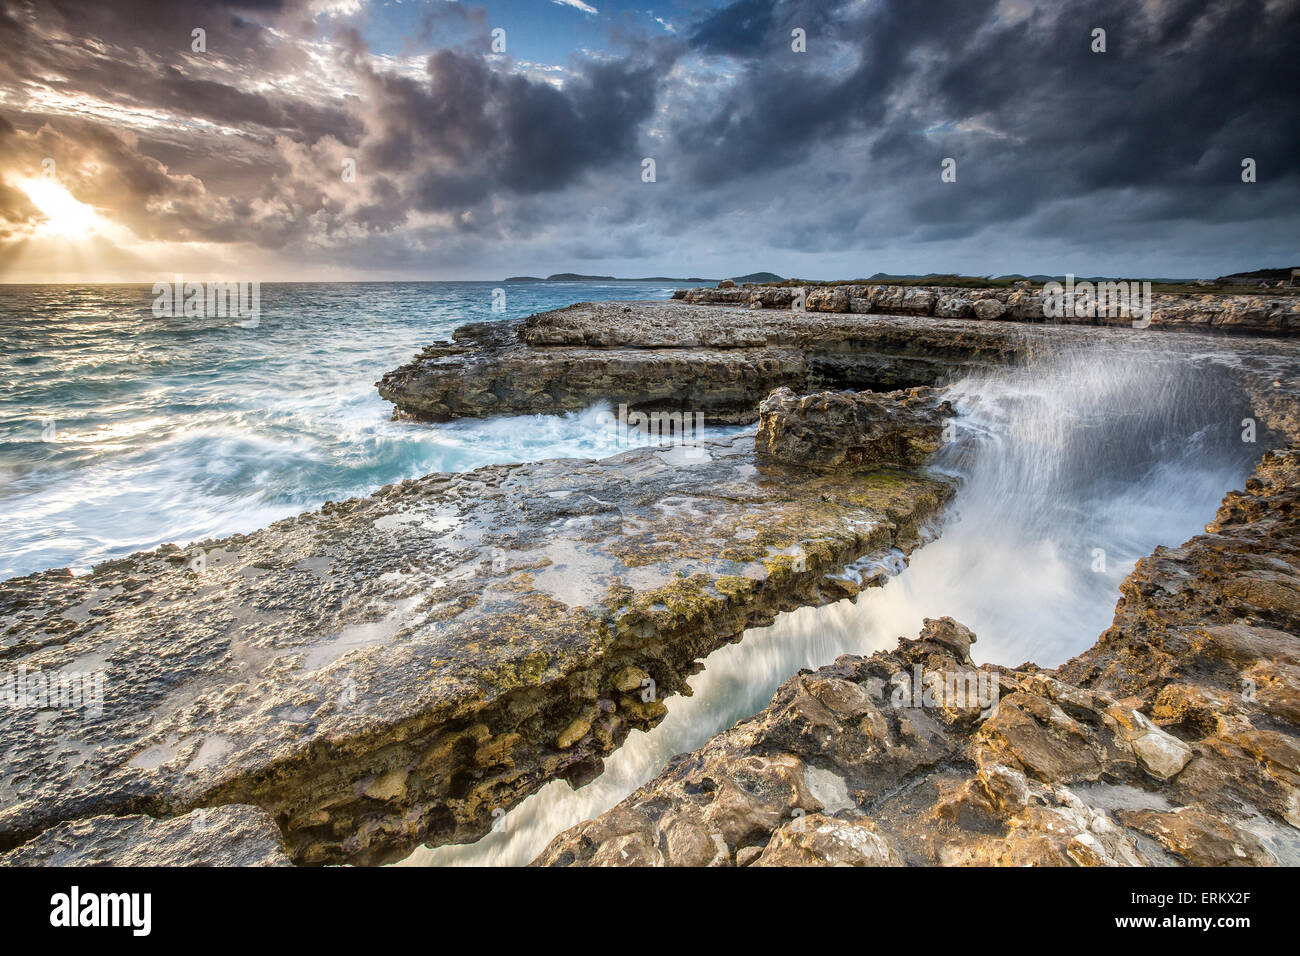 Les roches et le fracas des vagues à Devil's Bridge, une arche naturelle creusée par la mer, Antigua, Iles sous le vent, Antilles, Caraïbes Banque D'Images